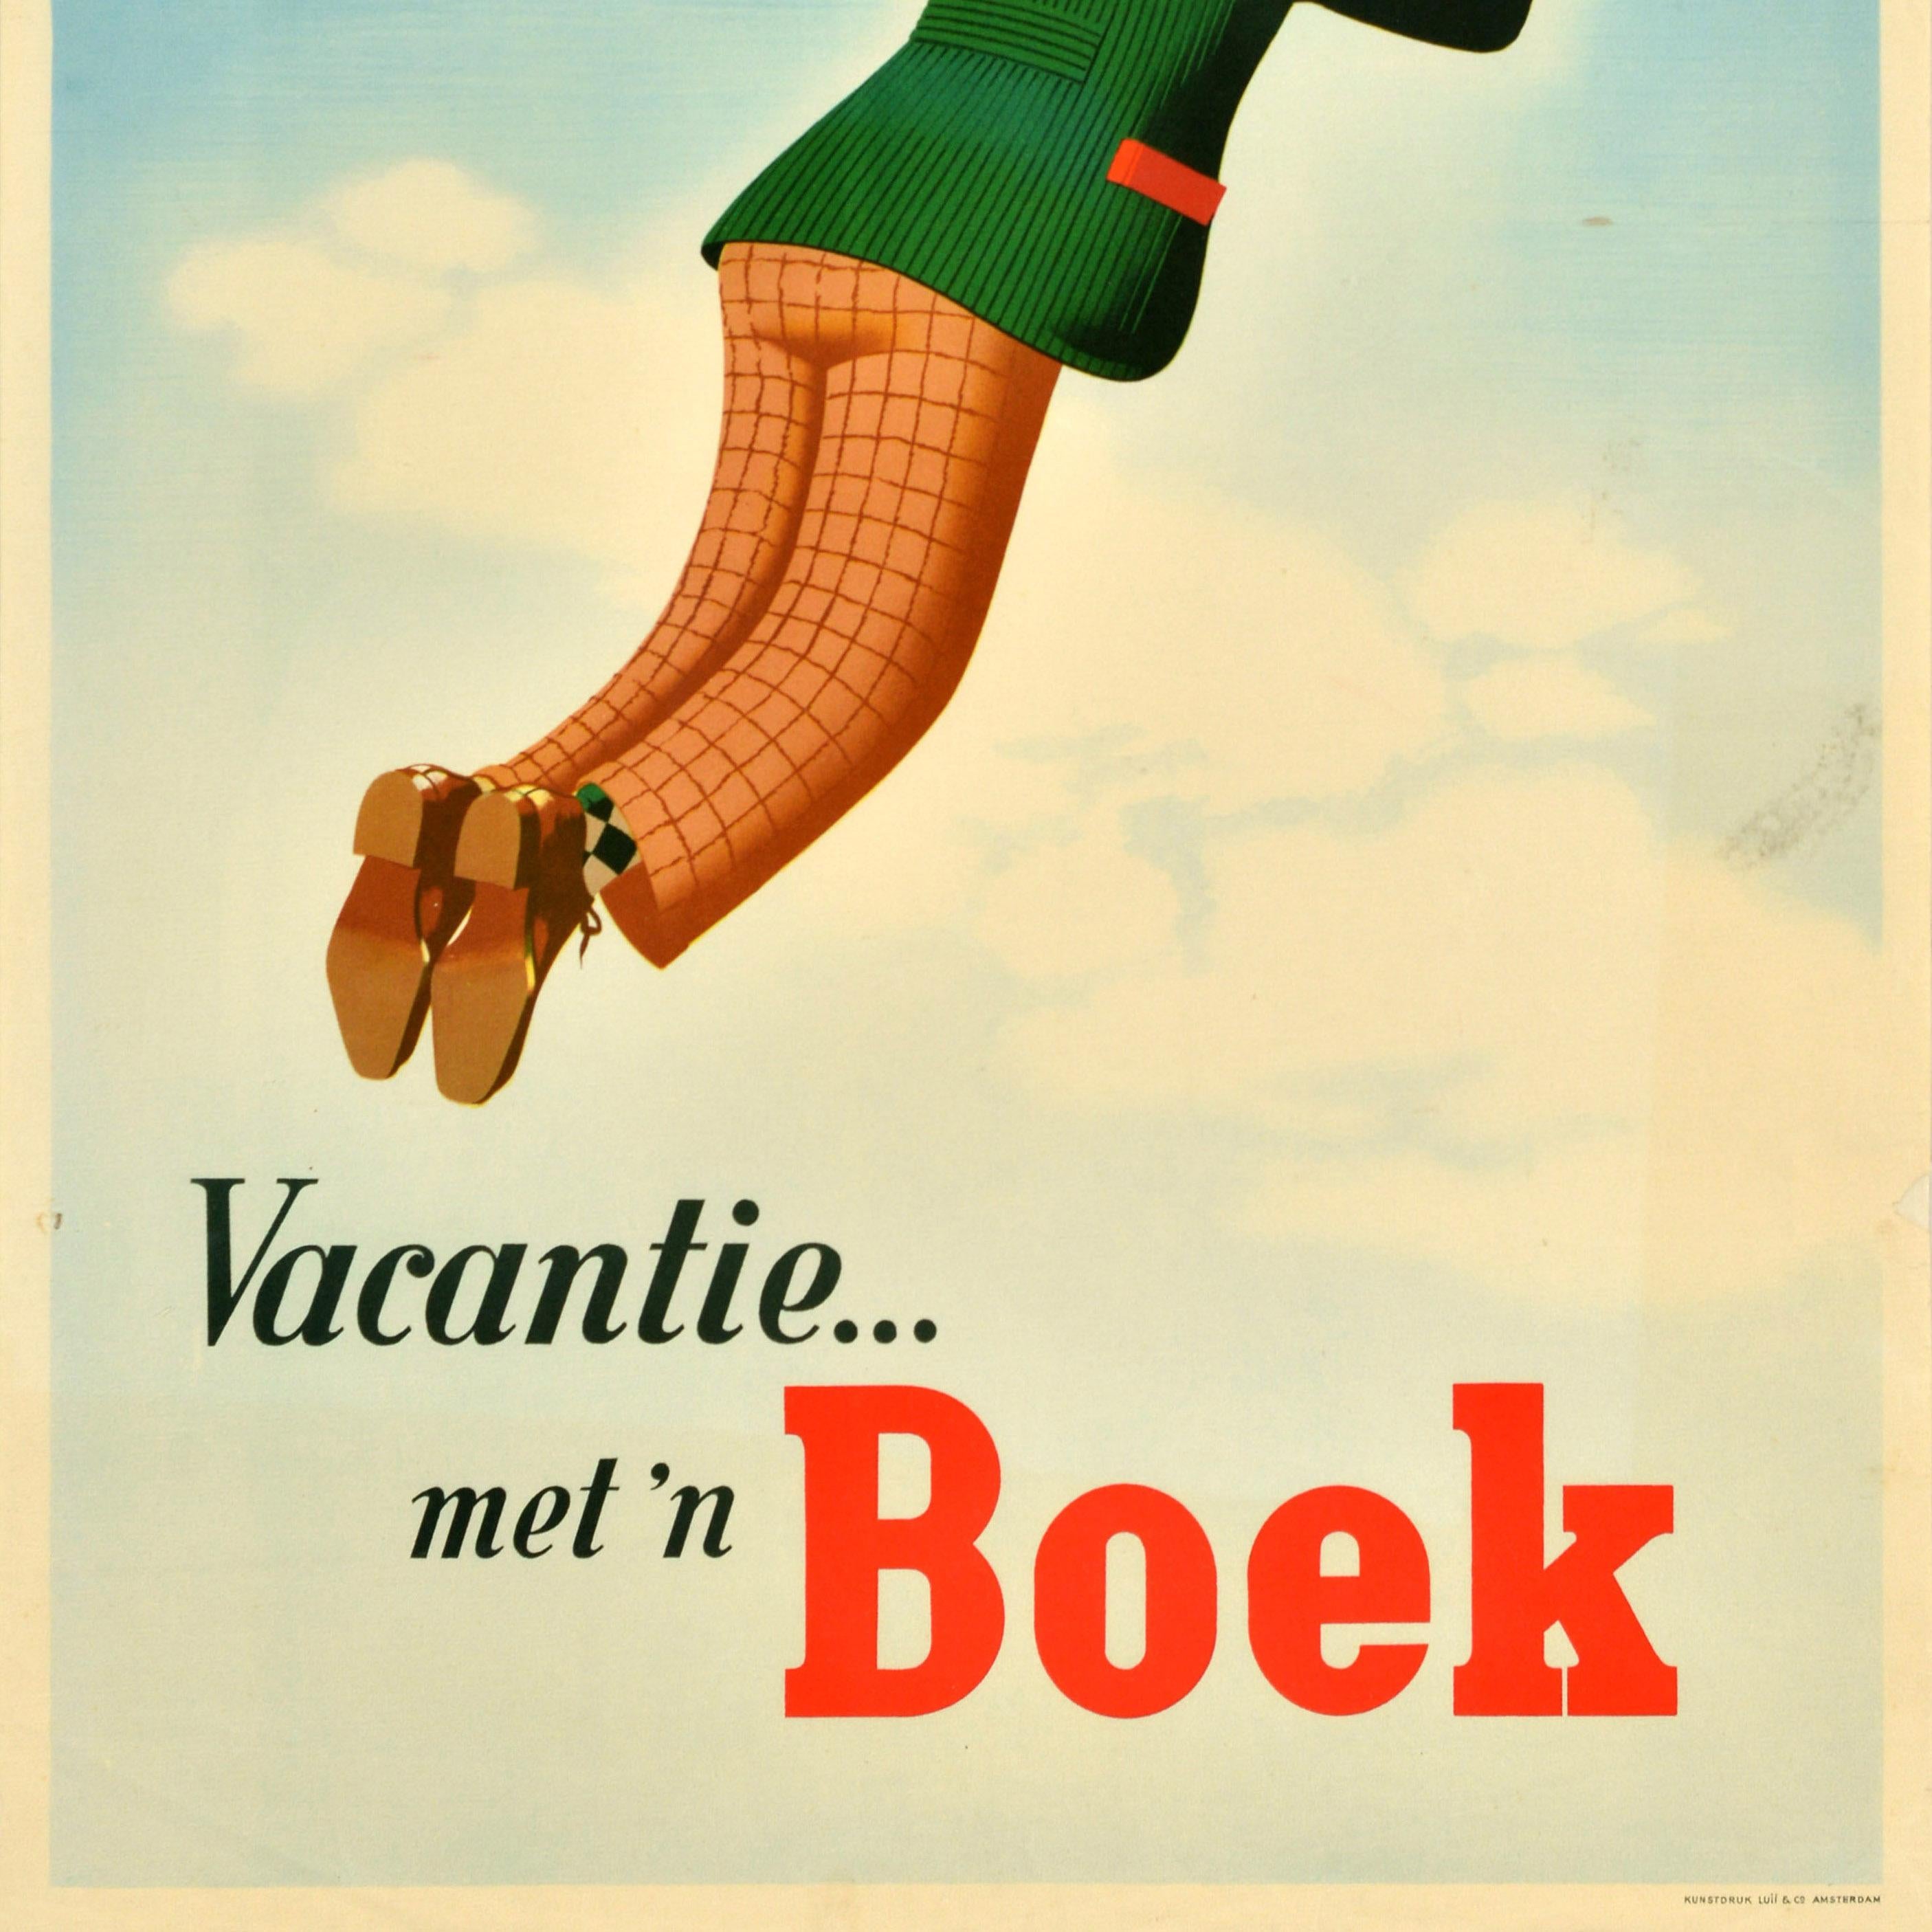 Original Vintage Advertising Poster Vacation Book Vacantie Boek Sky Jan Wijga For Sale 3